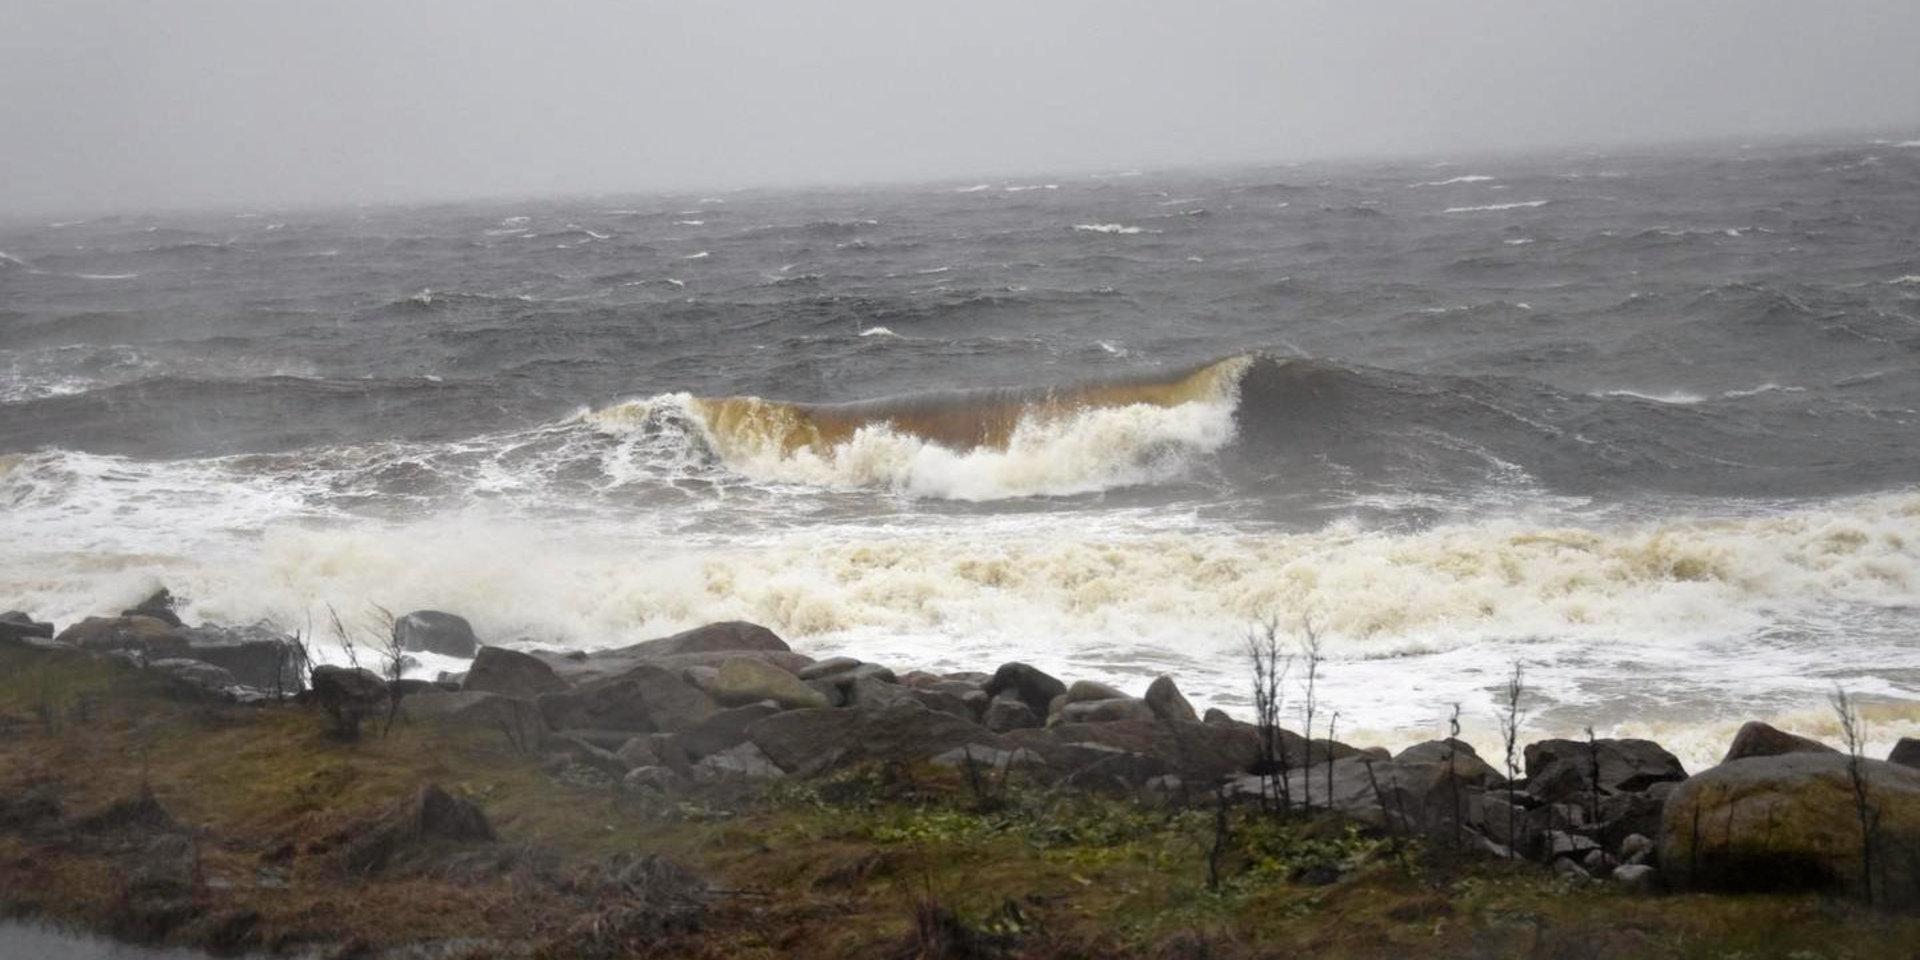 Det var utmed kusten, som här vid Grötvik, som vindstyrkan nådde upp till storm under förra helgen.